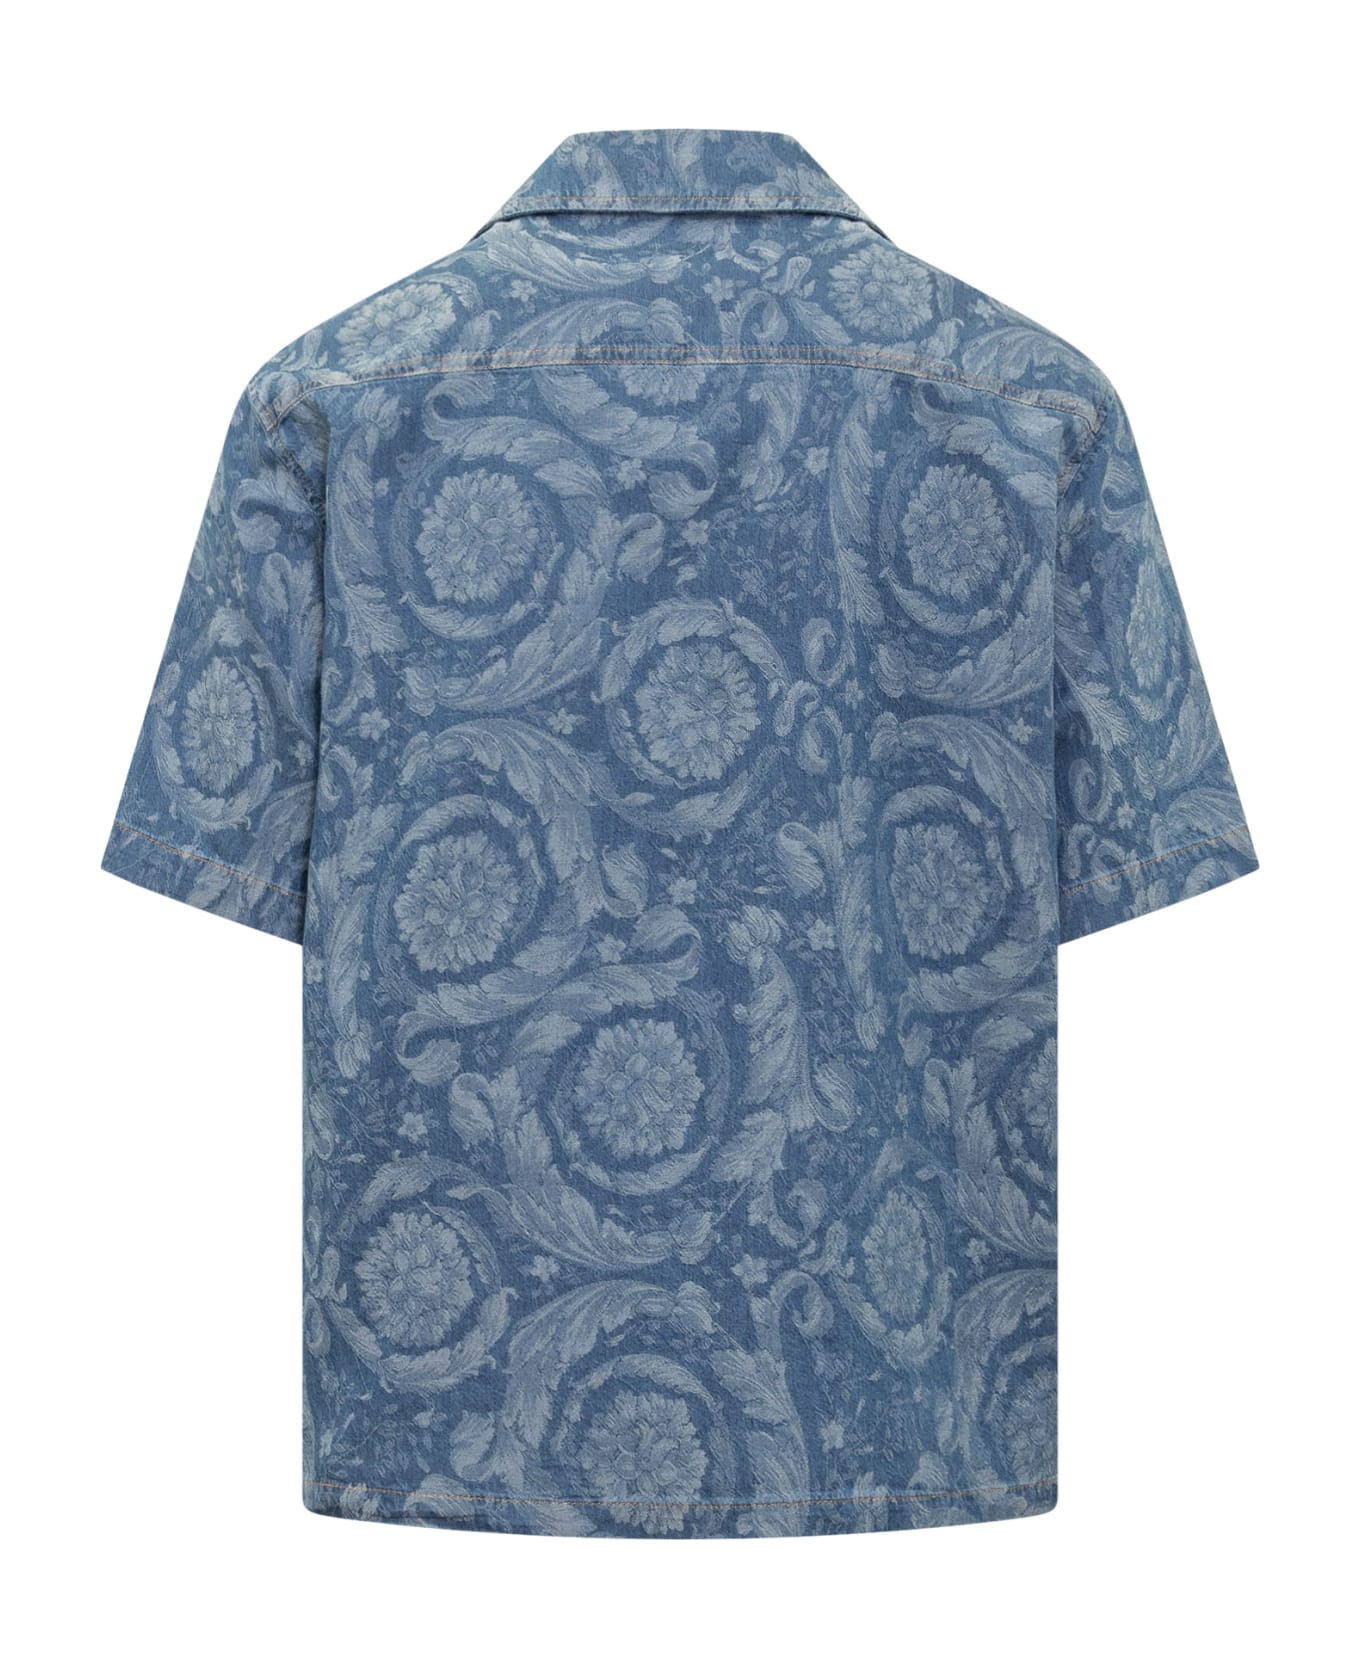 Versace Floral Print Cotton Shirt - Denim